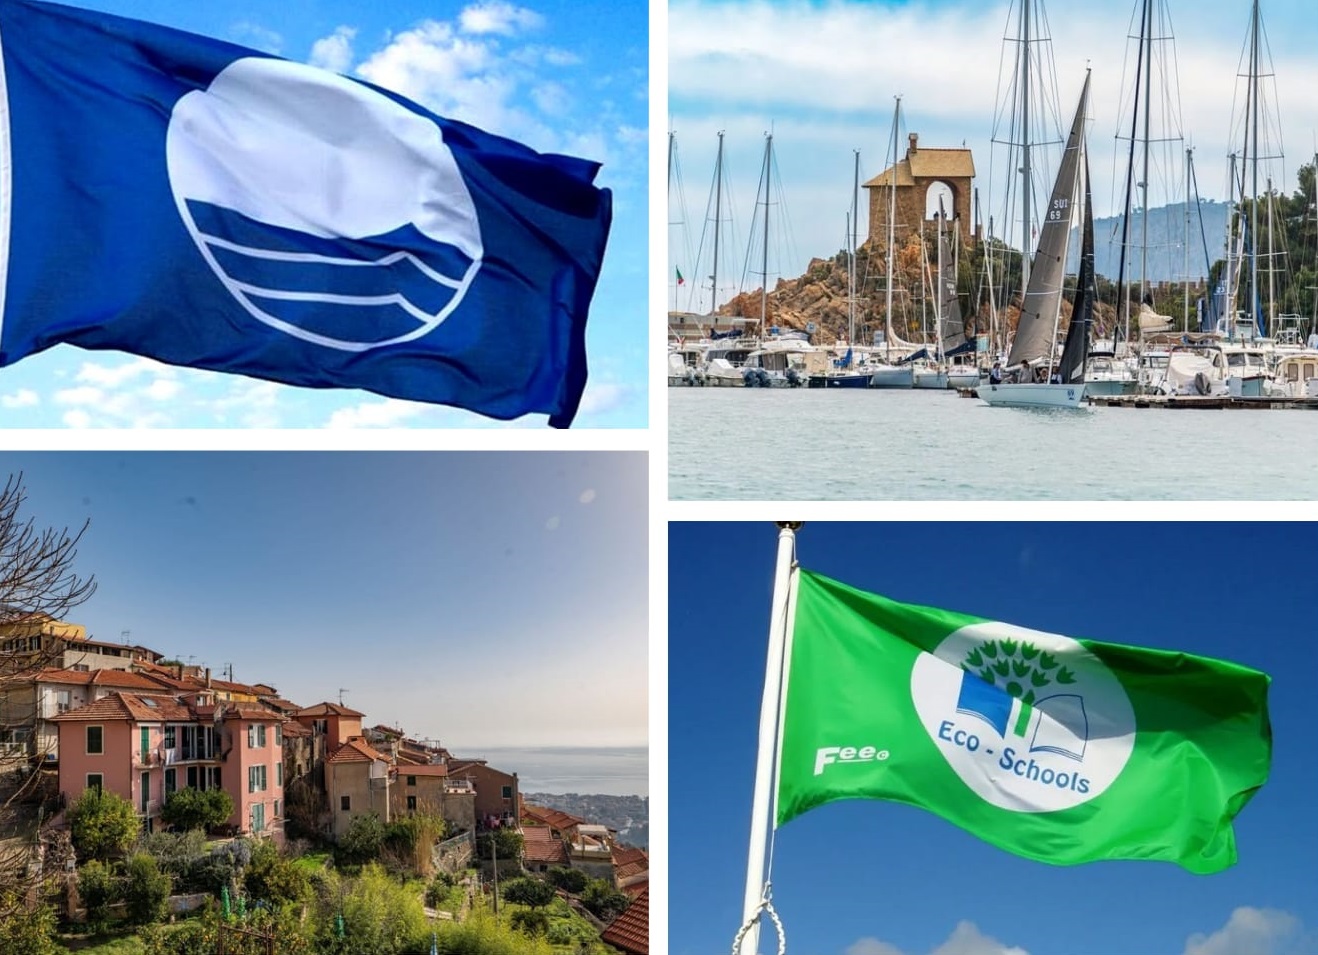 Due importanti riconoscimenti per Alassio: la Bandiera Blu alla Marina di Alassio e la Bandiera Verde alla scuola Bottaro di Moglio